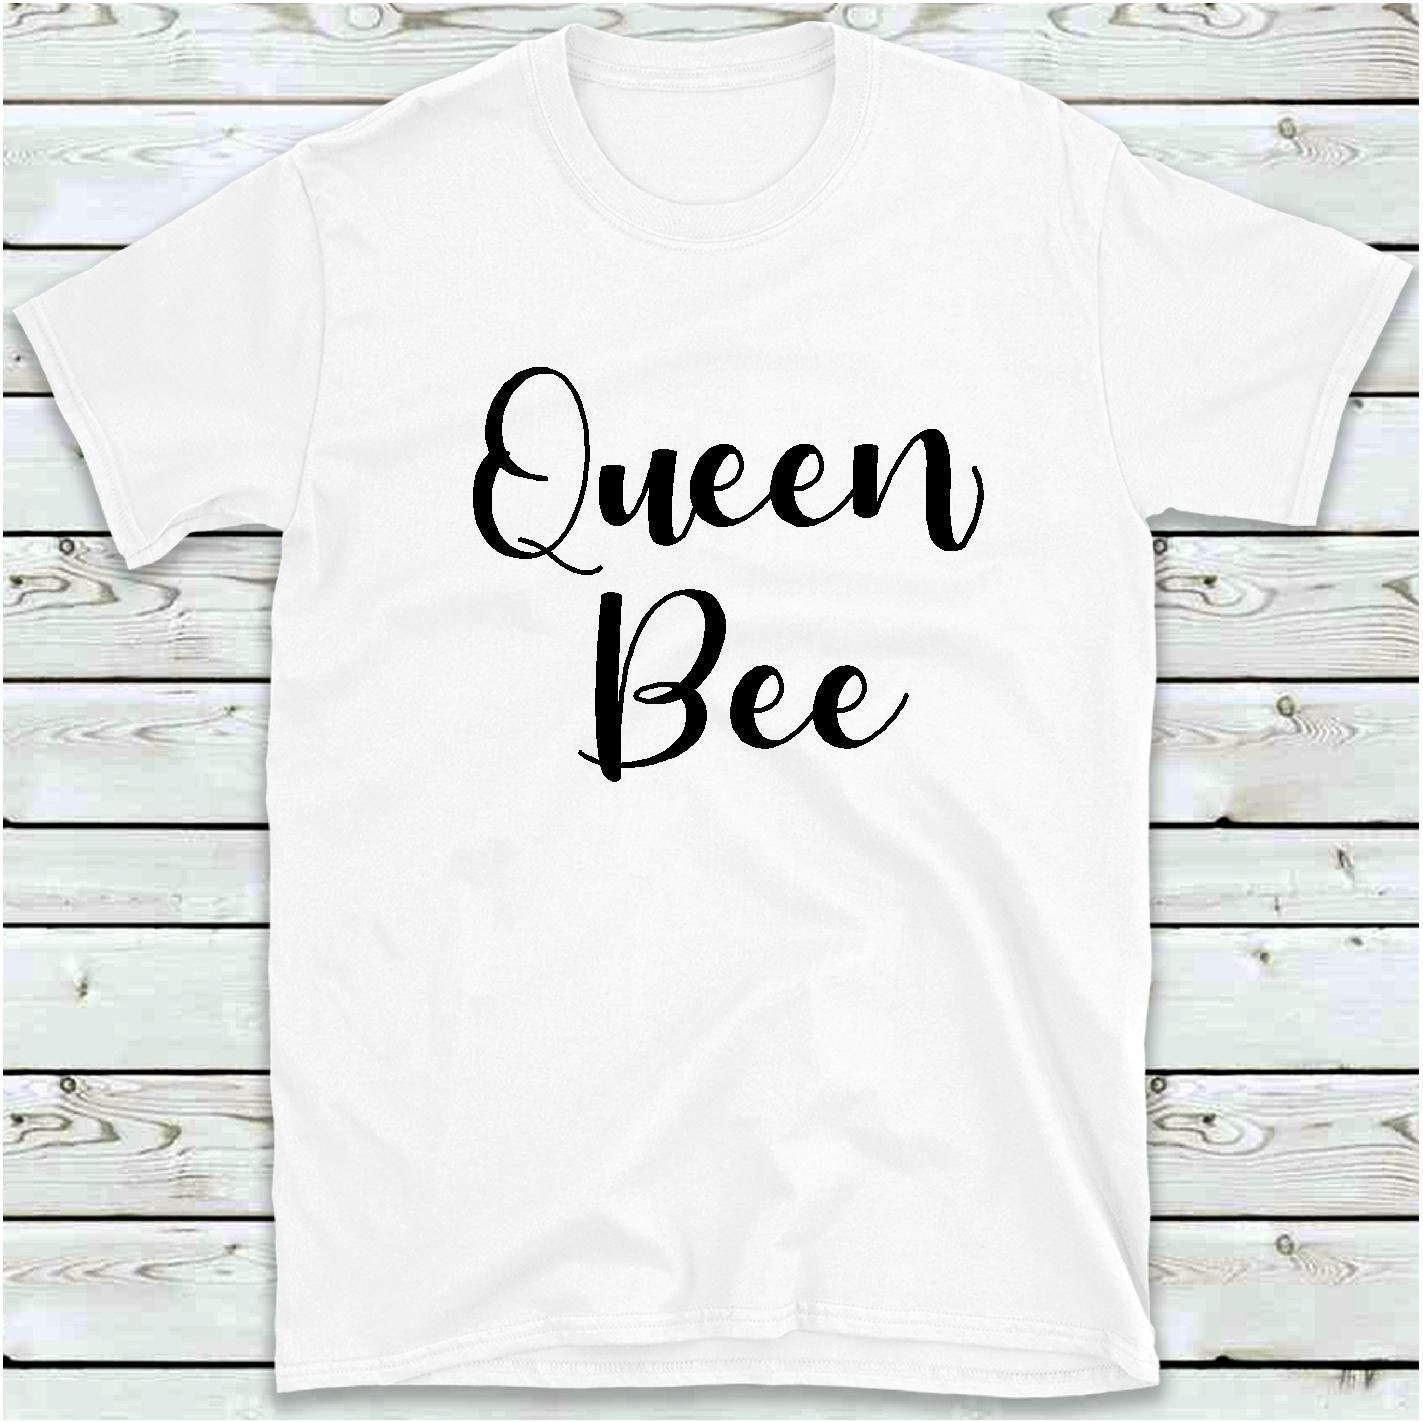 Queen Bee T-Shirt Women's Ladies Teen Girls Tee Shirt | Etsy